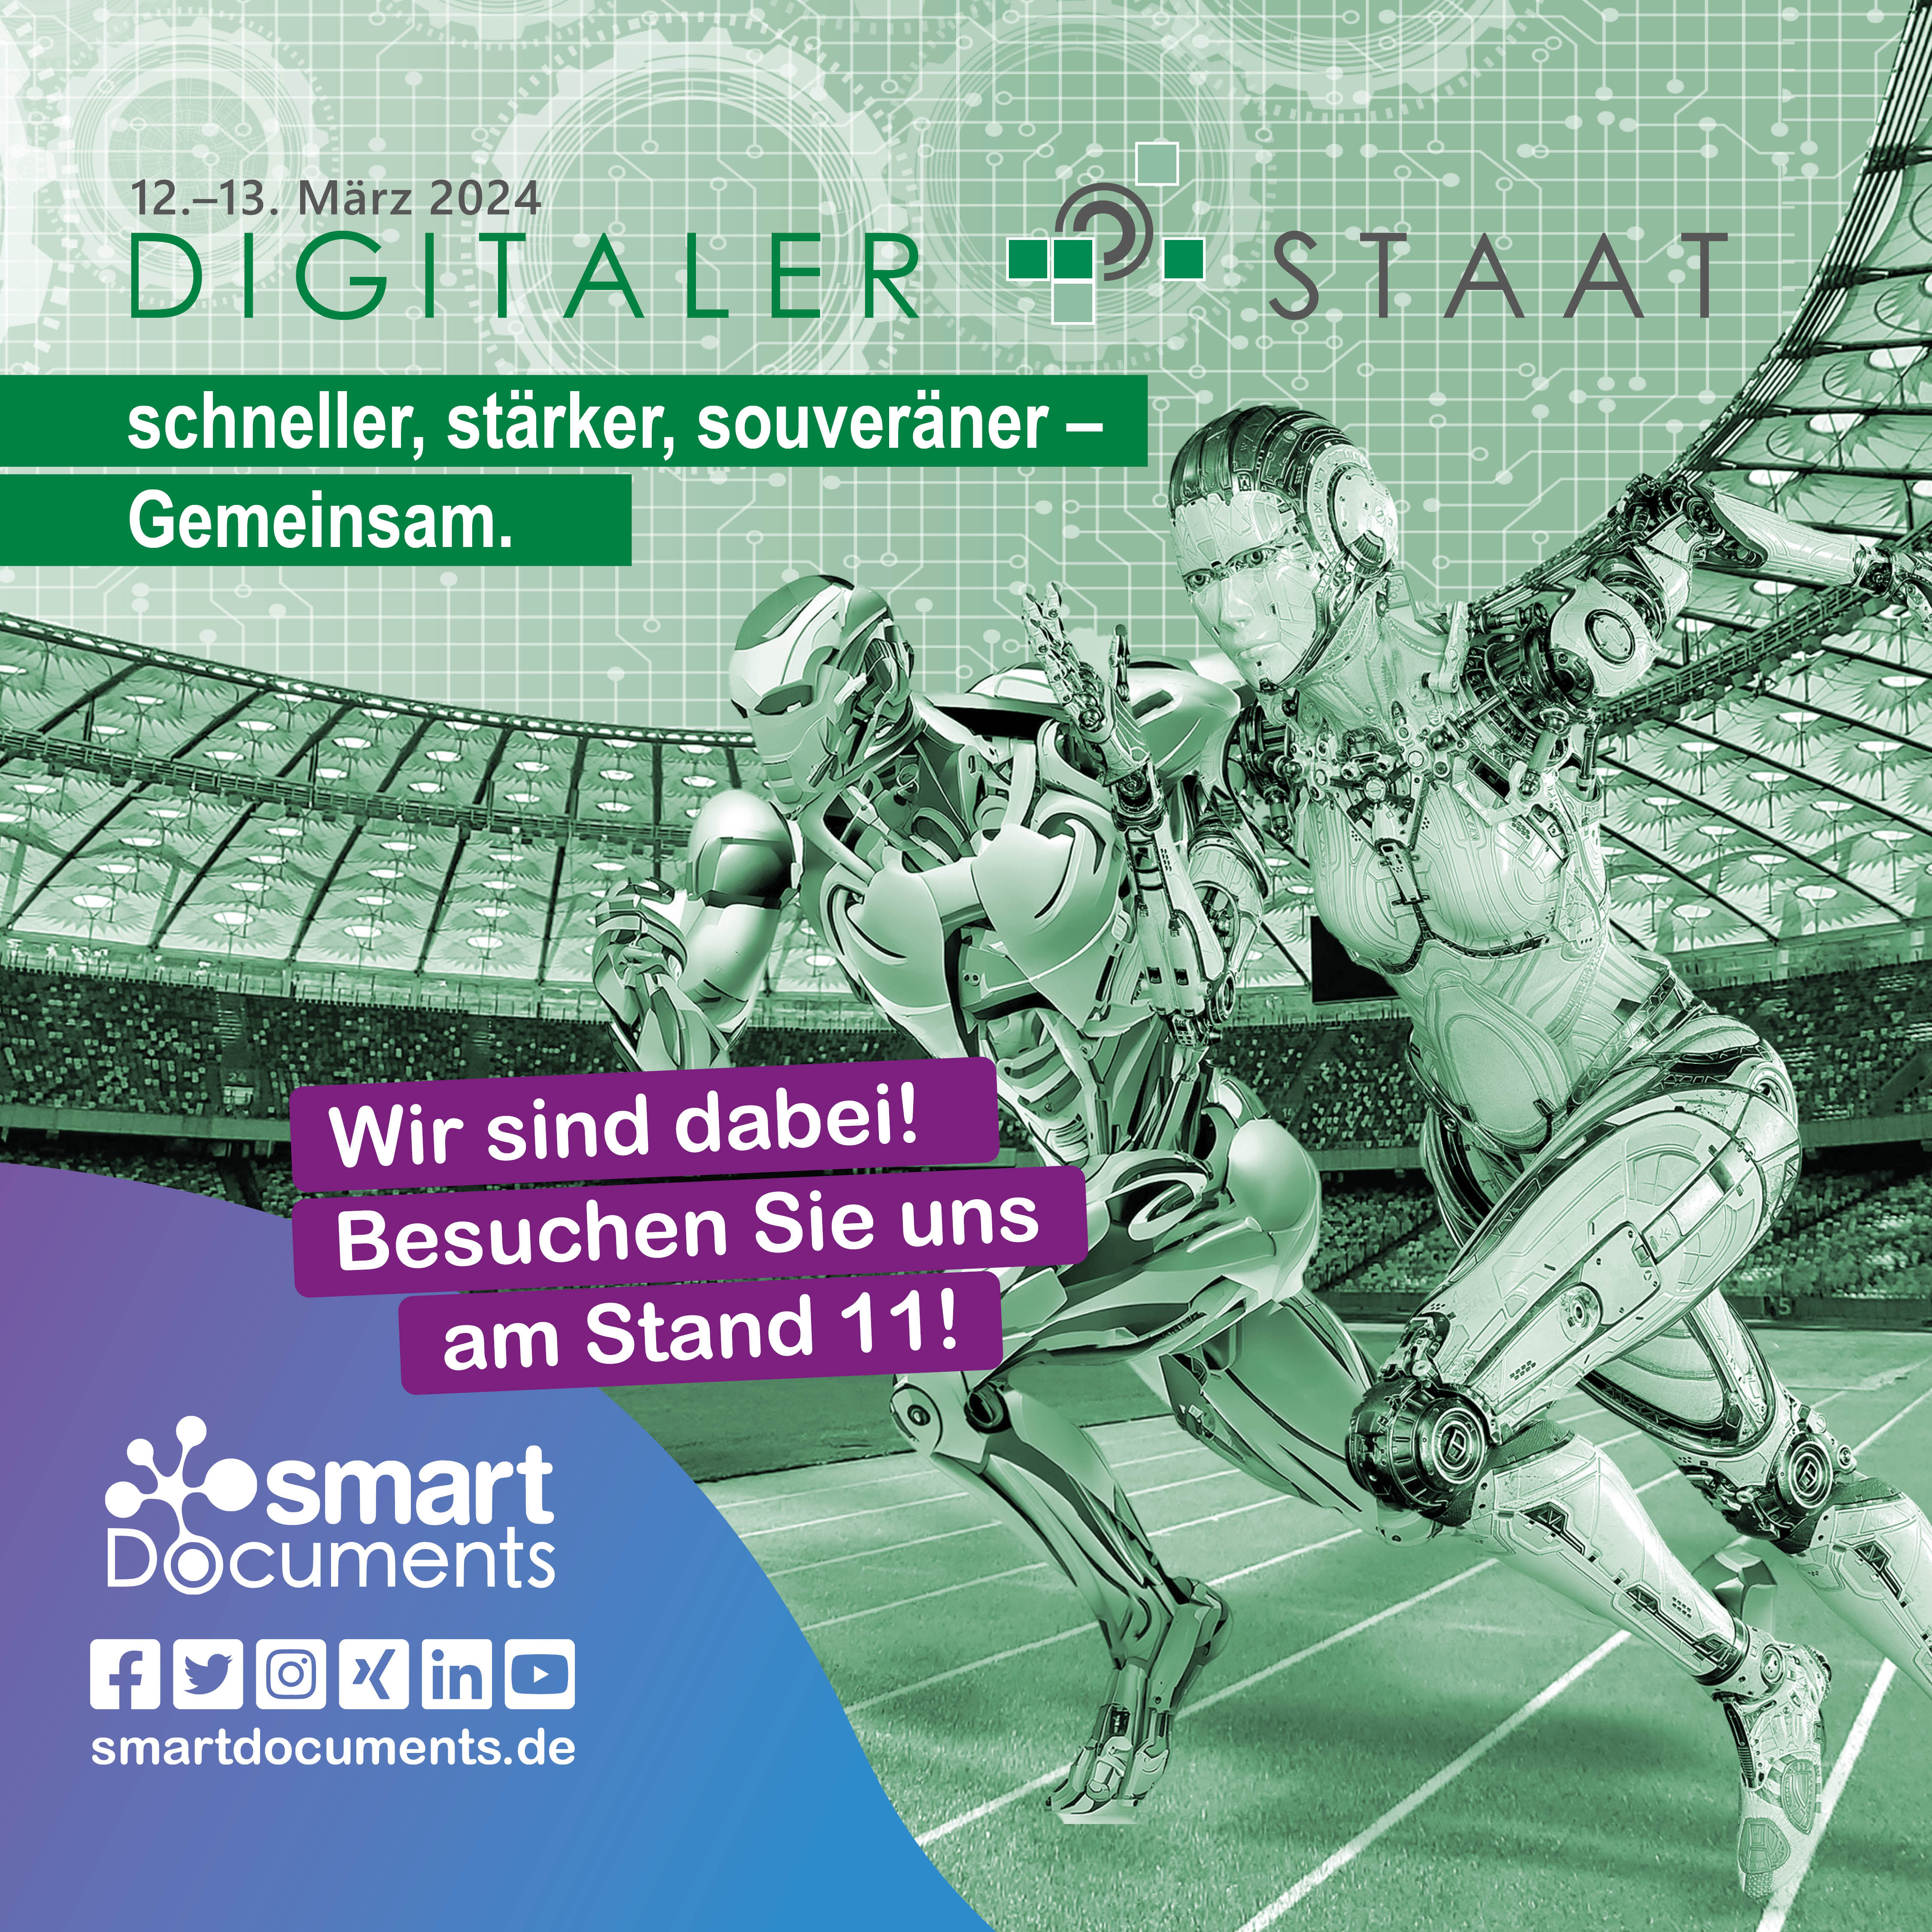 Vektorgrafik: Roboter, die in einer Arena einen Sprint laufen mit dem Logo der Veranstaltung Digitaler Staat und dem Slogan "schneller, stärker, souveräner - GEMEINSAM"